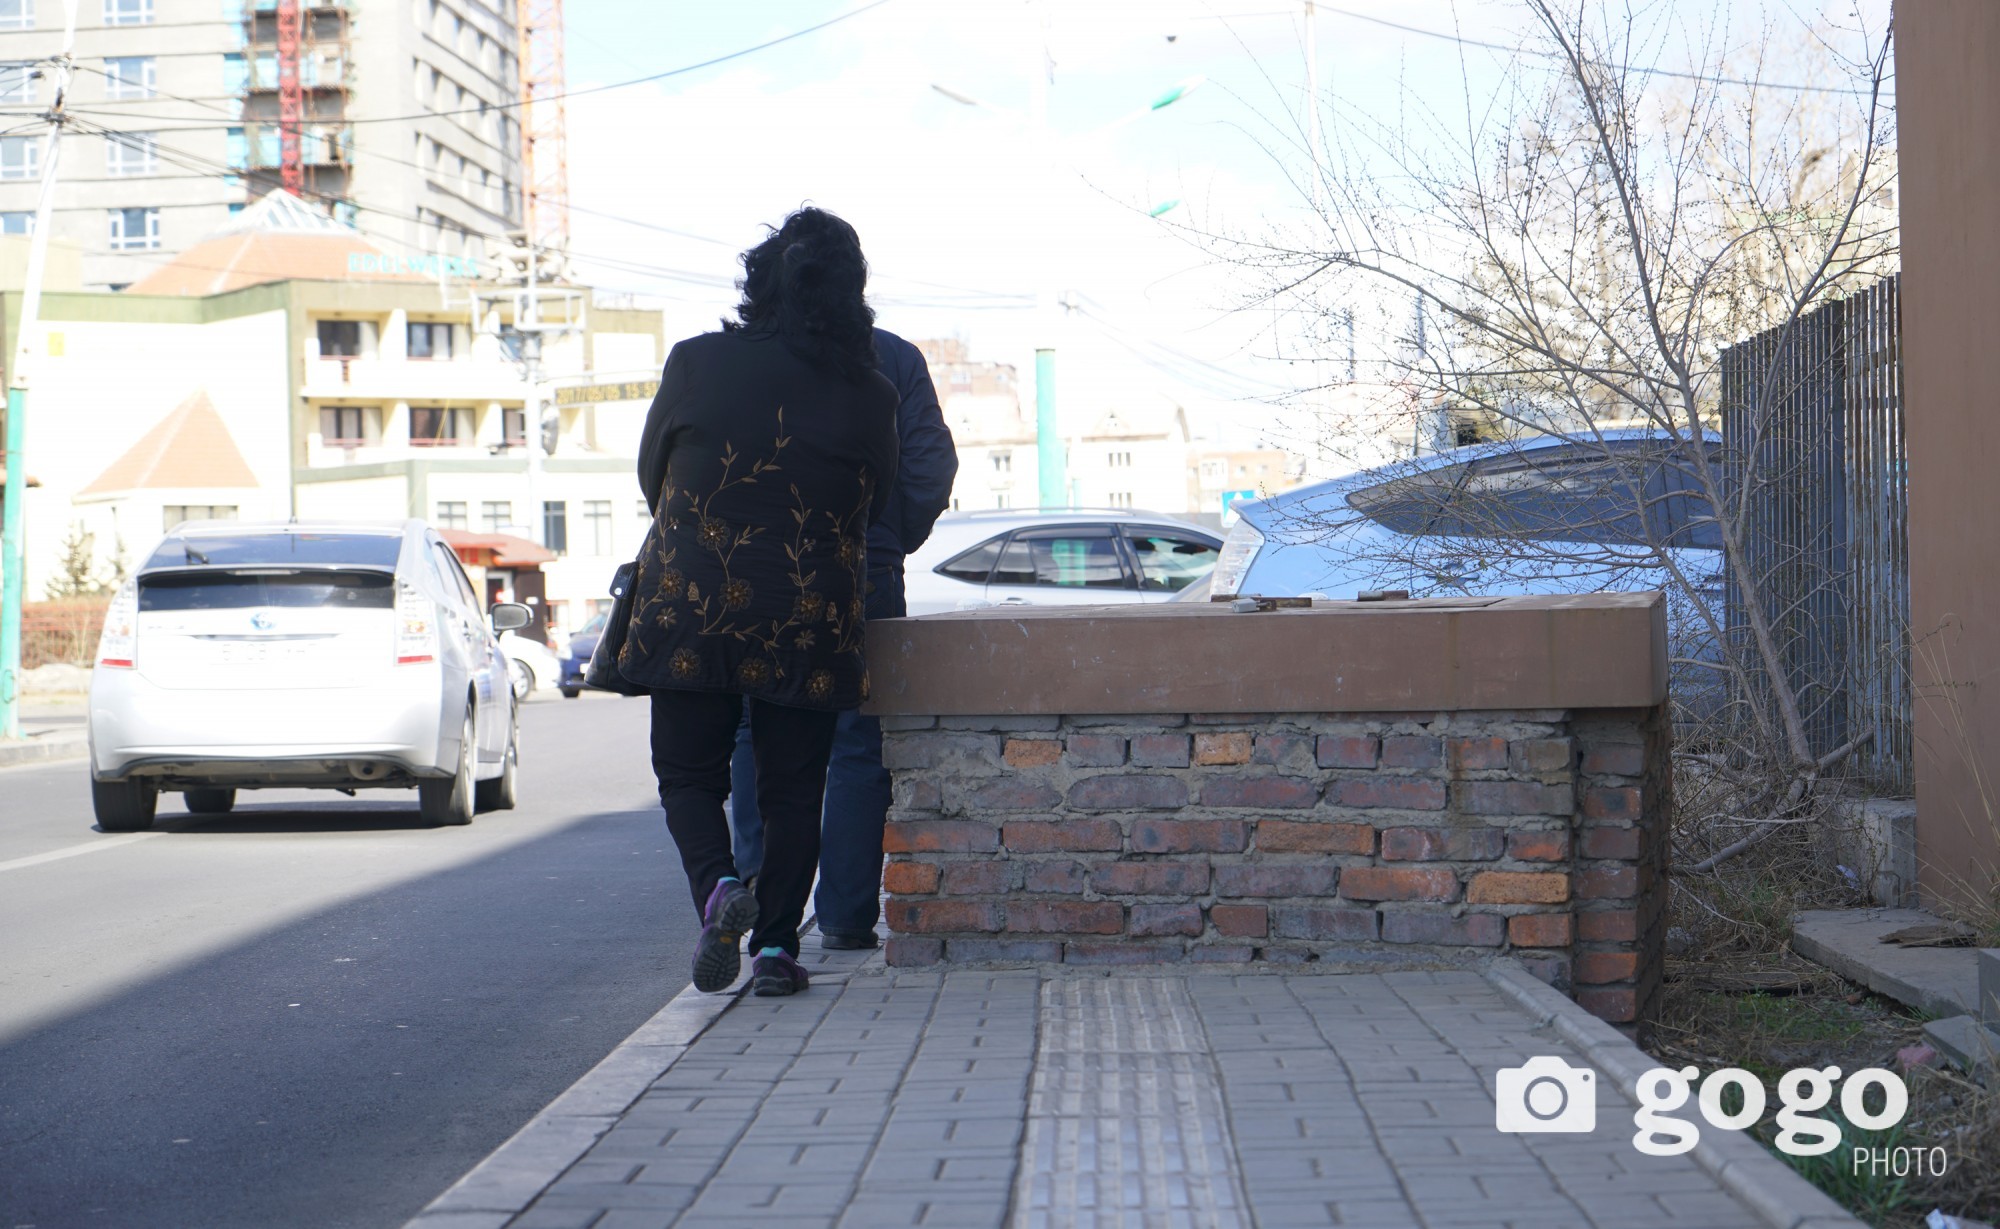 Pedestrian near Embassy of Czech Republik. Too cramped Ulaanbaatar... /2017.04.22/